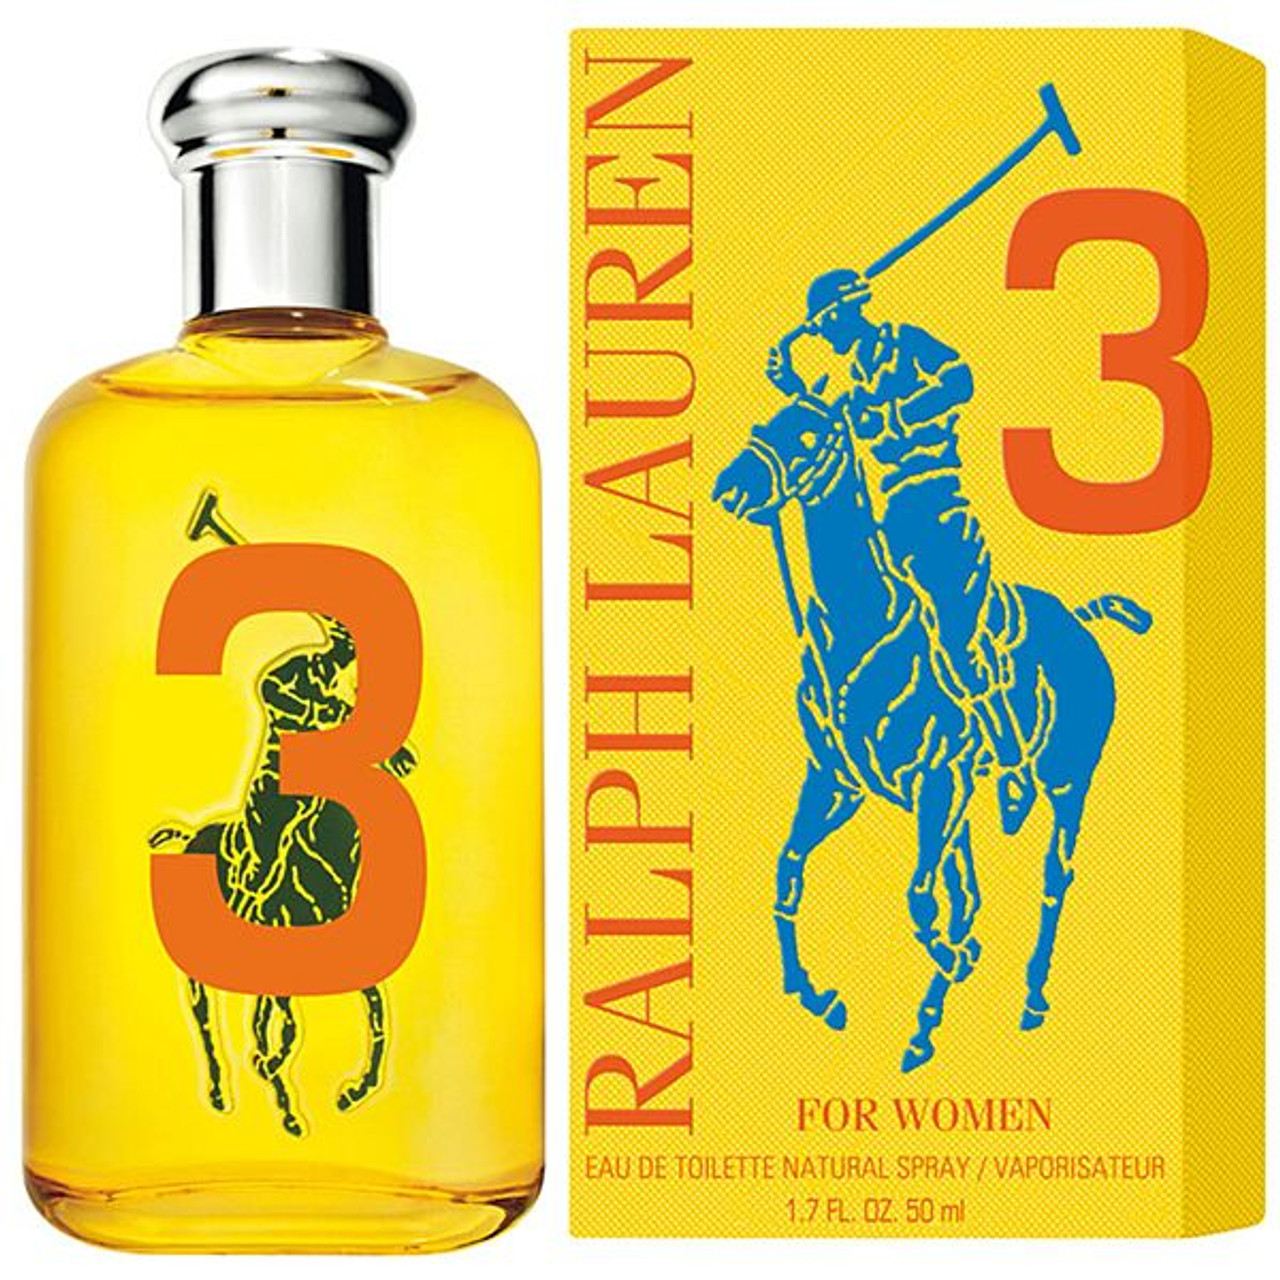 ralph lauren big pony 3 perfume